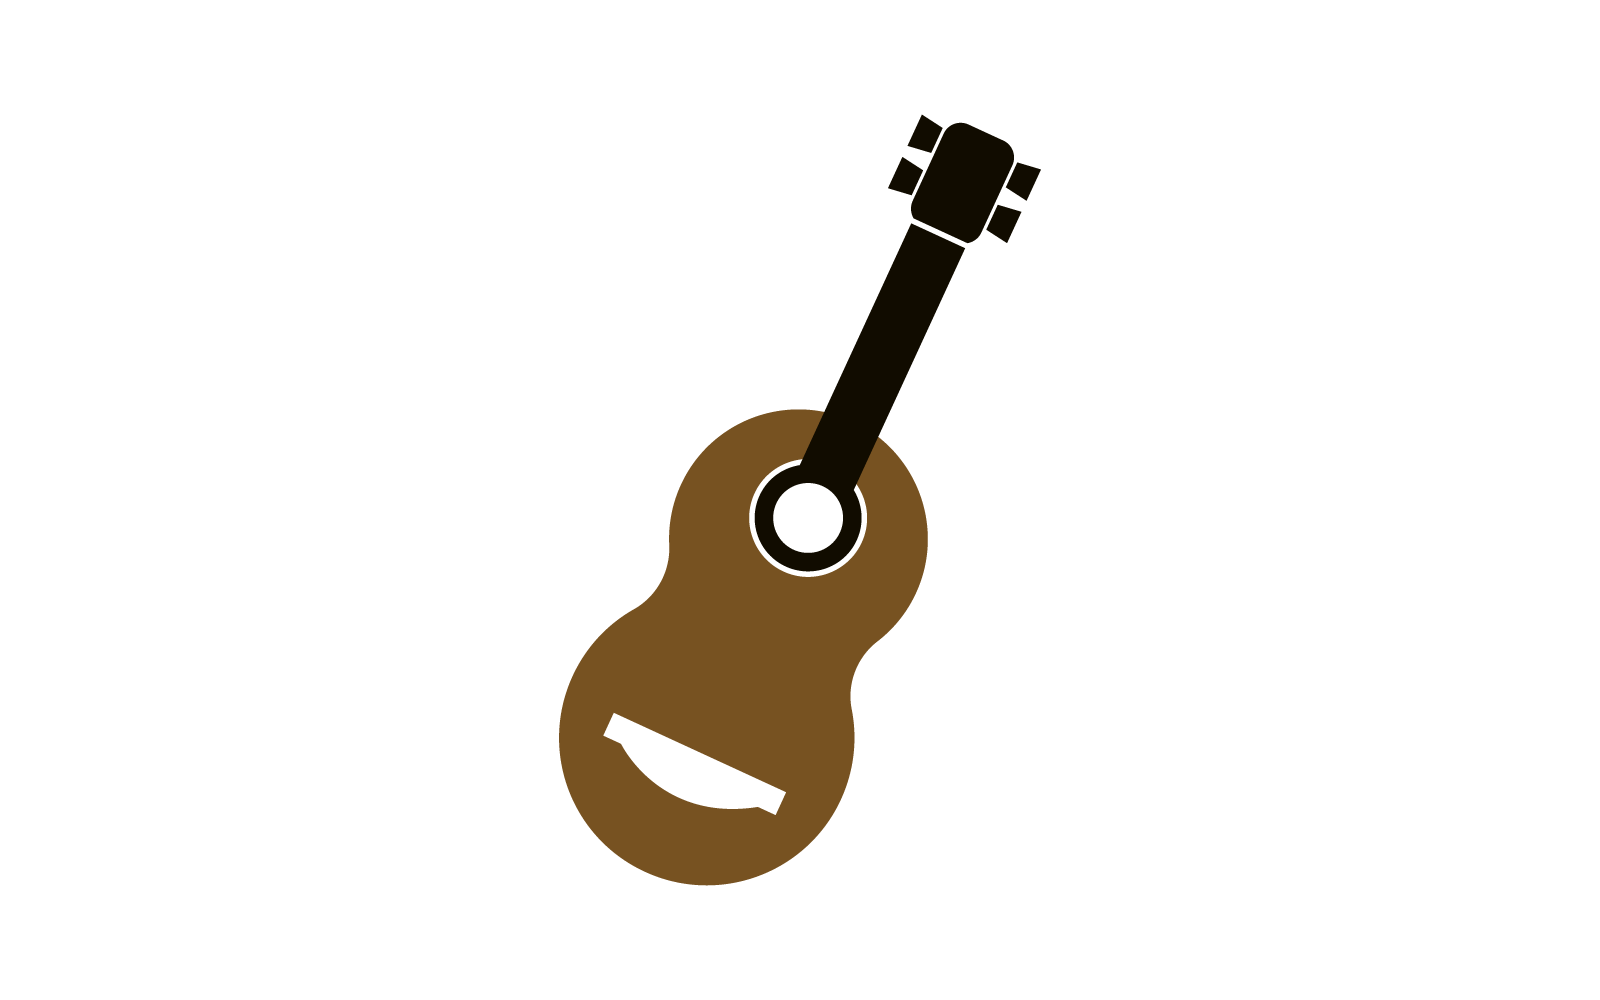 Guitar logo flat design icon vector template